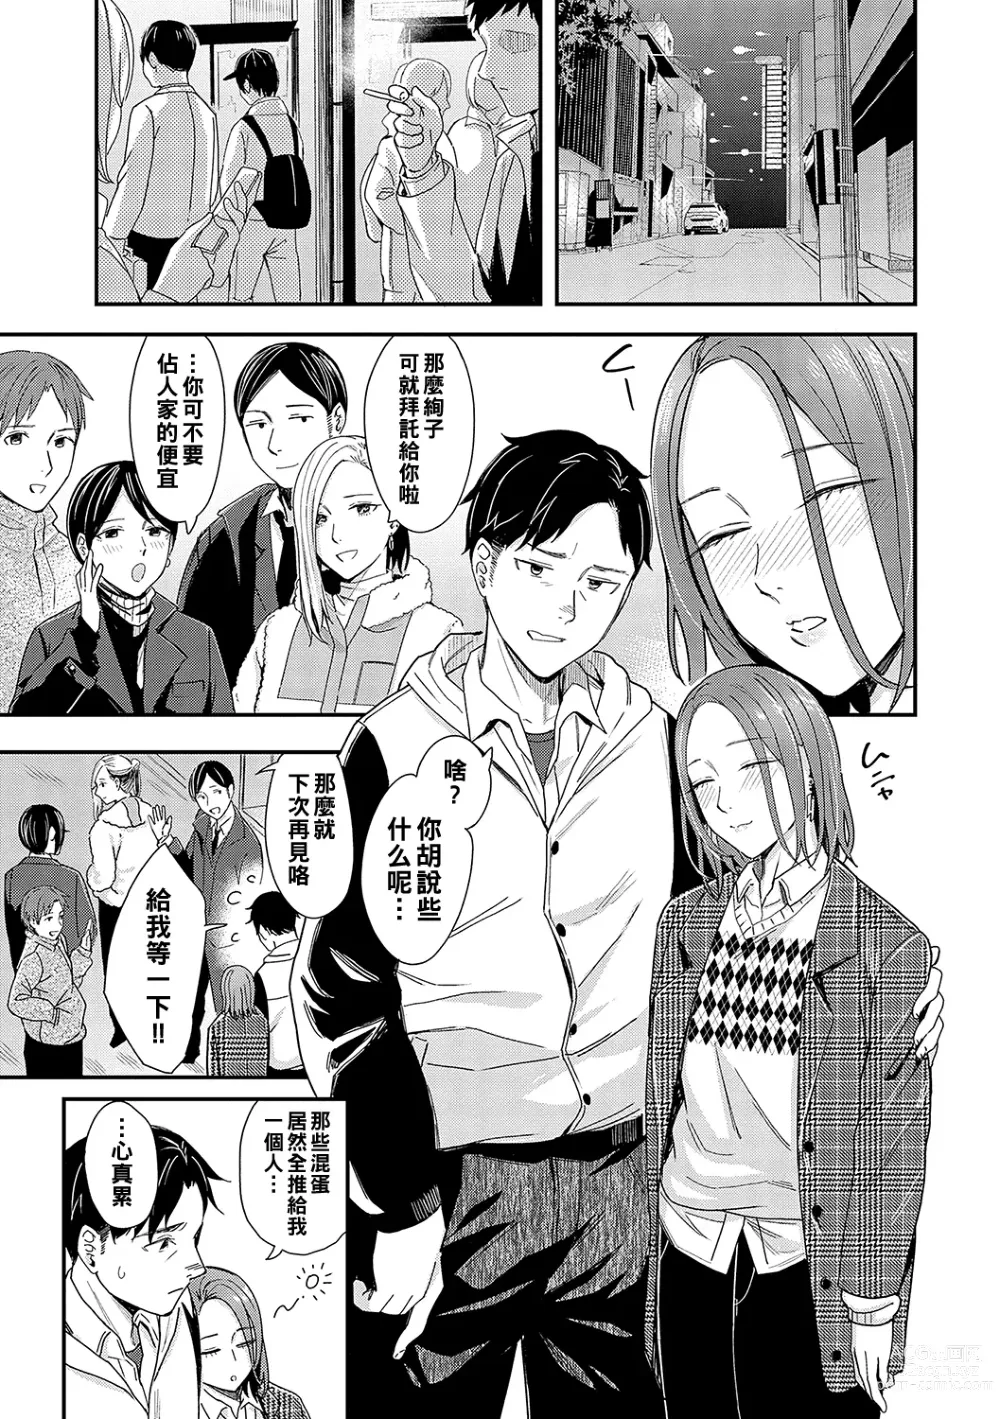 Page 5 of manga Kudaranai Renai Eiga no You ni... - Like a crappy romance movie...